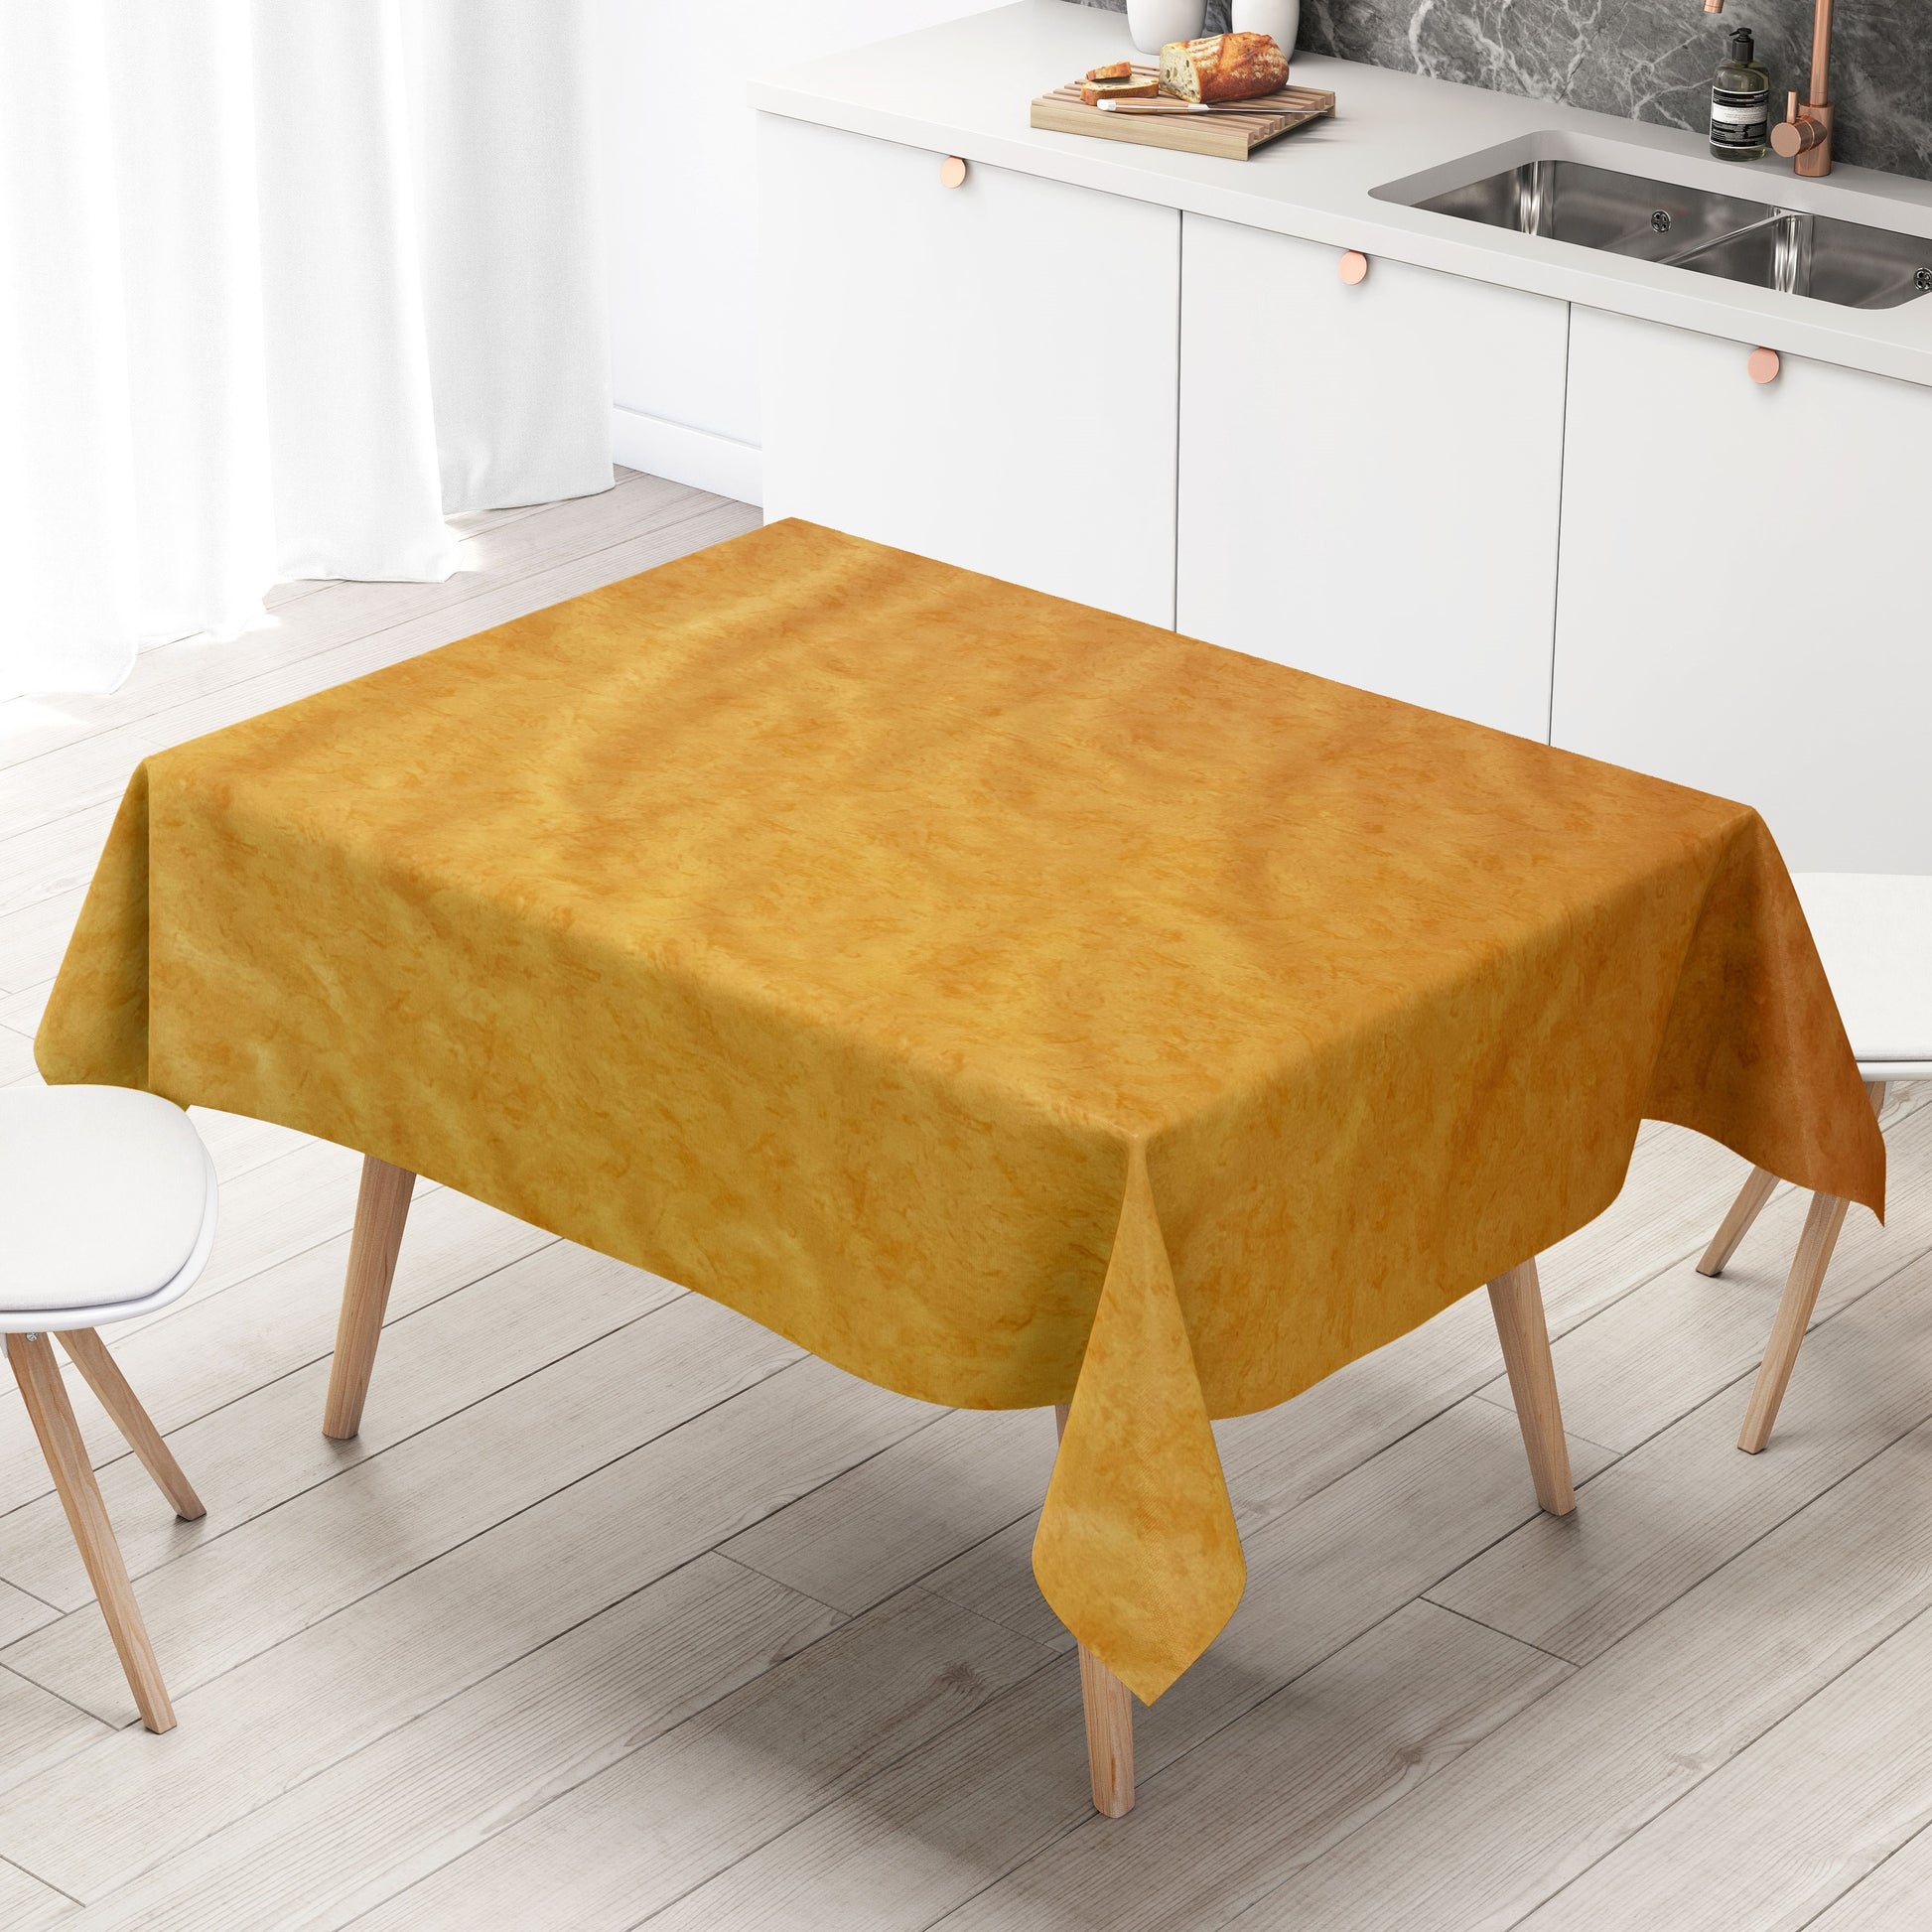 Tischdecke oval rund C142604 eckig gelb – Wachstuch marmoriert orange